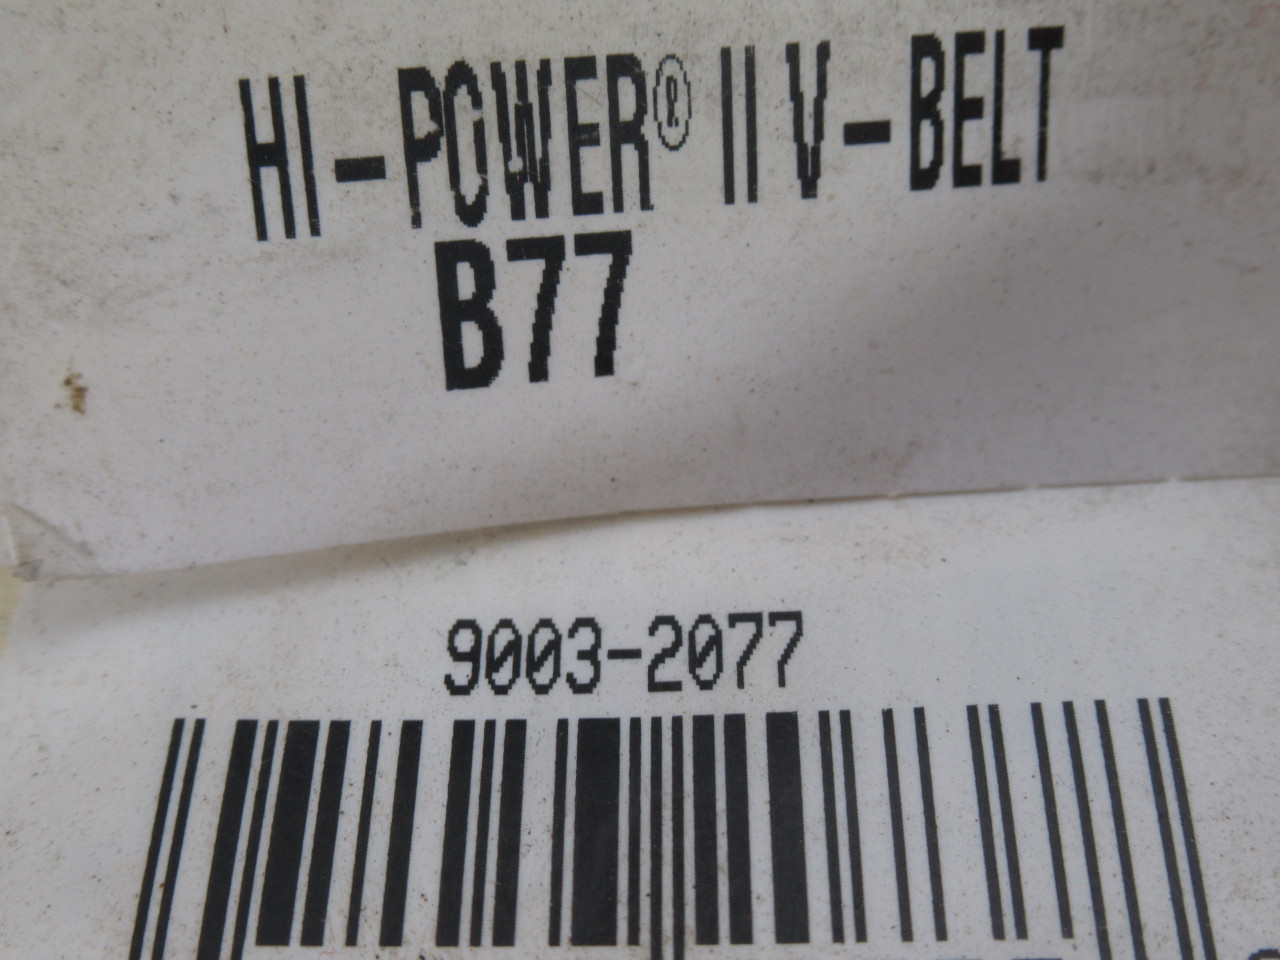 Gates B77 9003-2077 Hi-Power V-Belt 80"L .66"W .41"T ! NEW !